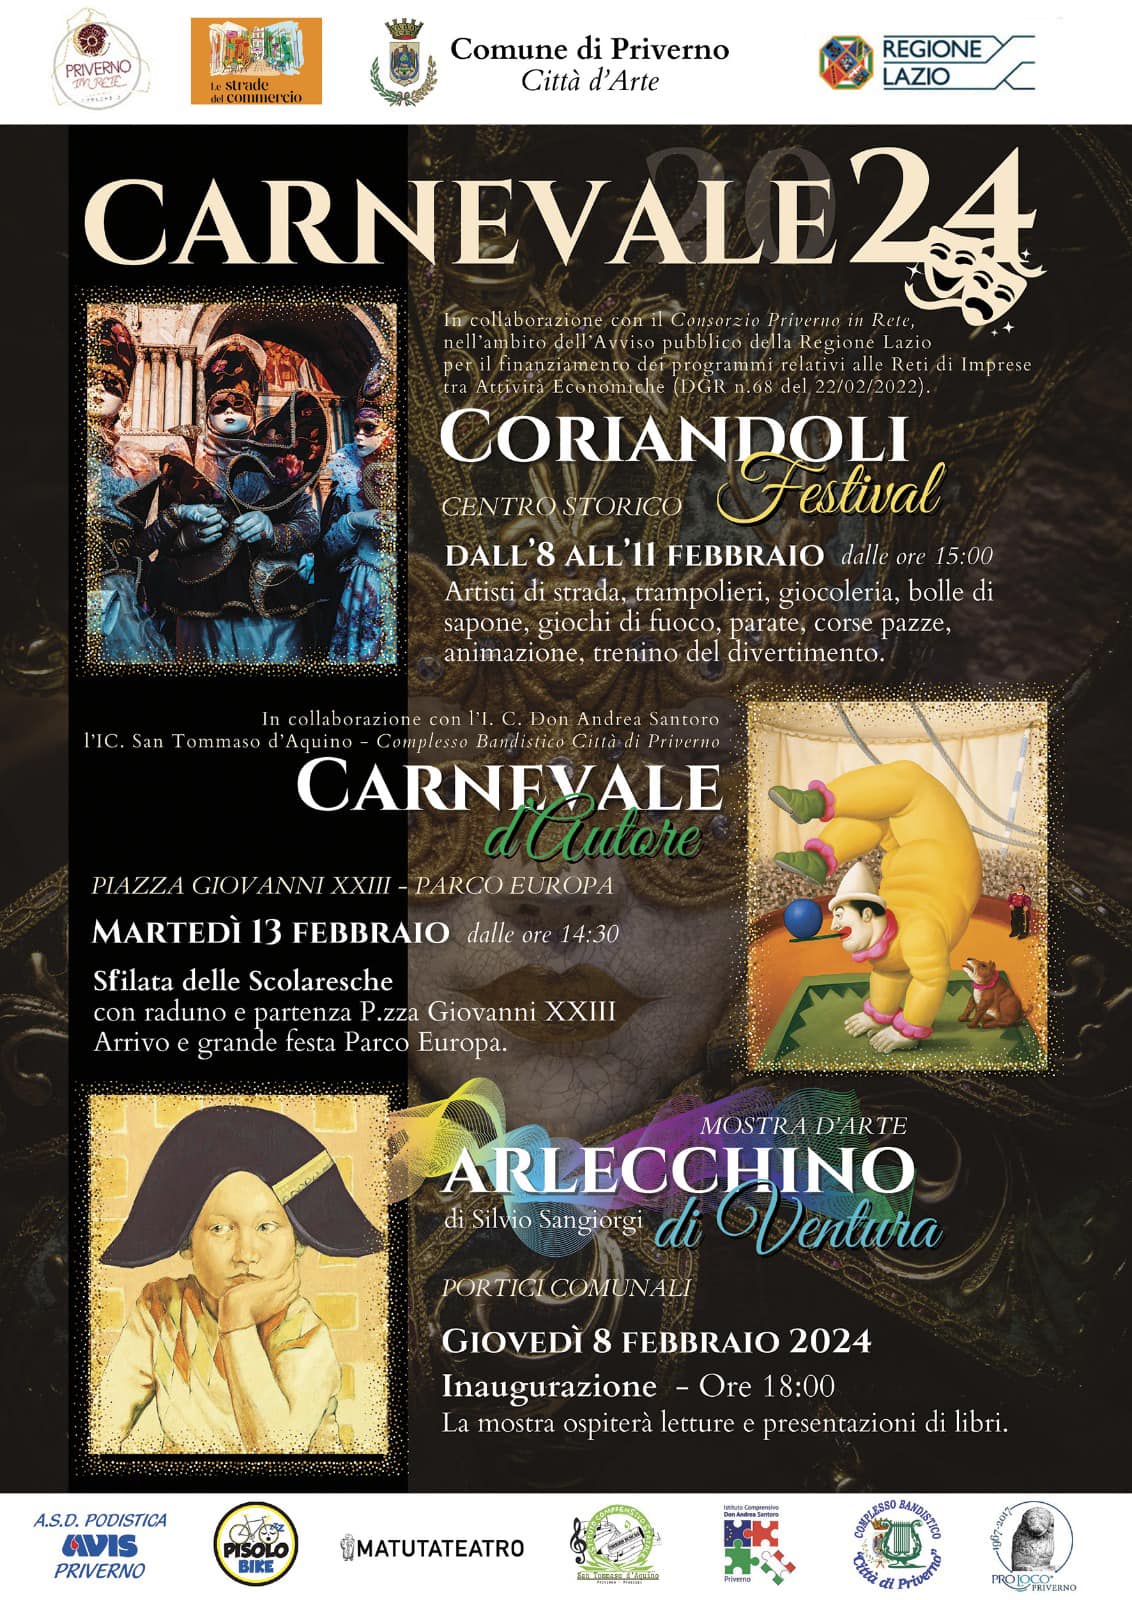 Priverno: Carnevale 2024 @ Comune di Priverno (LT)